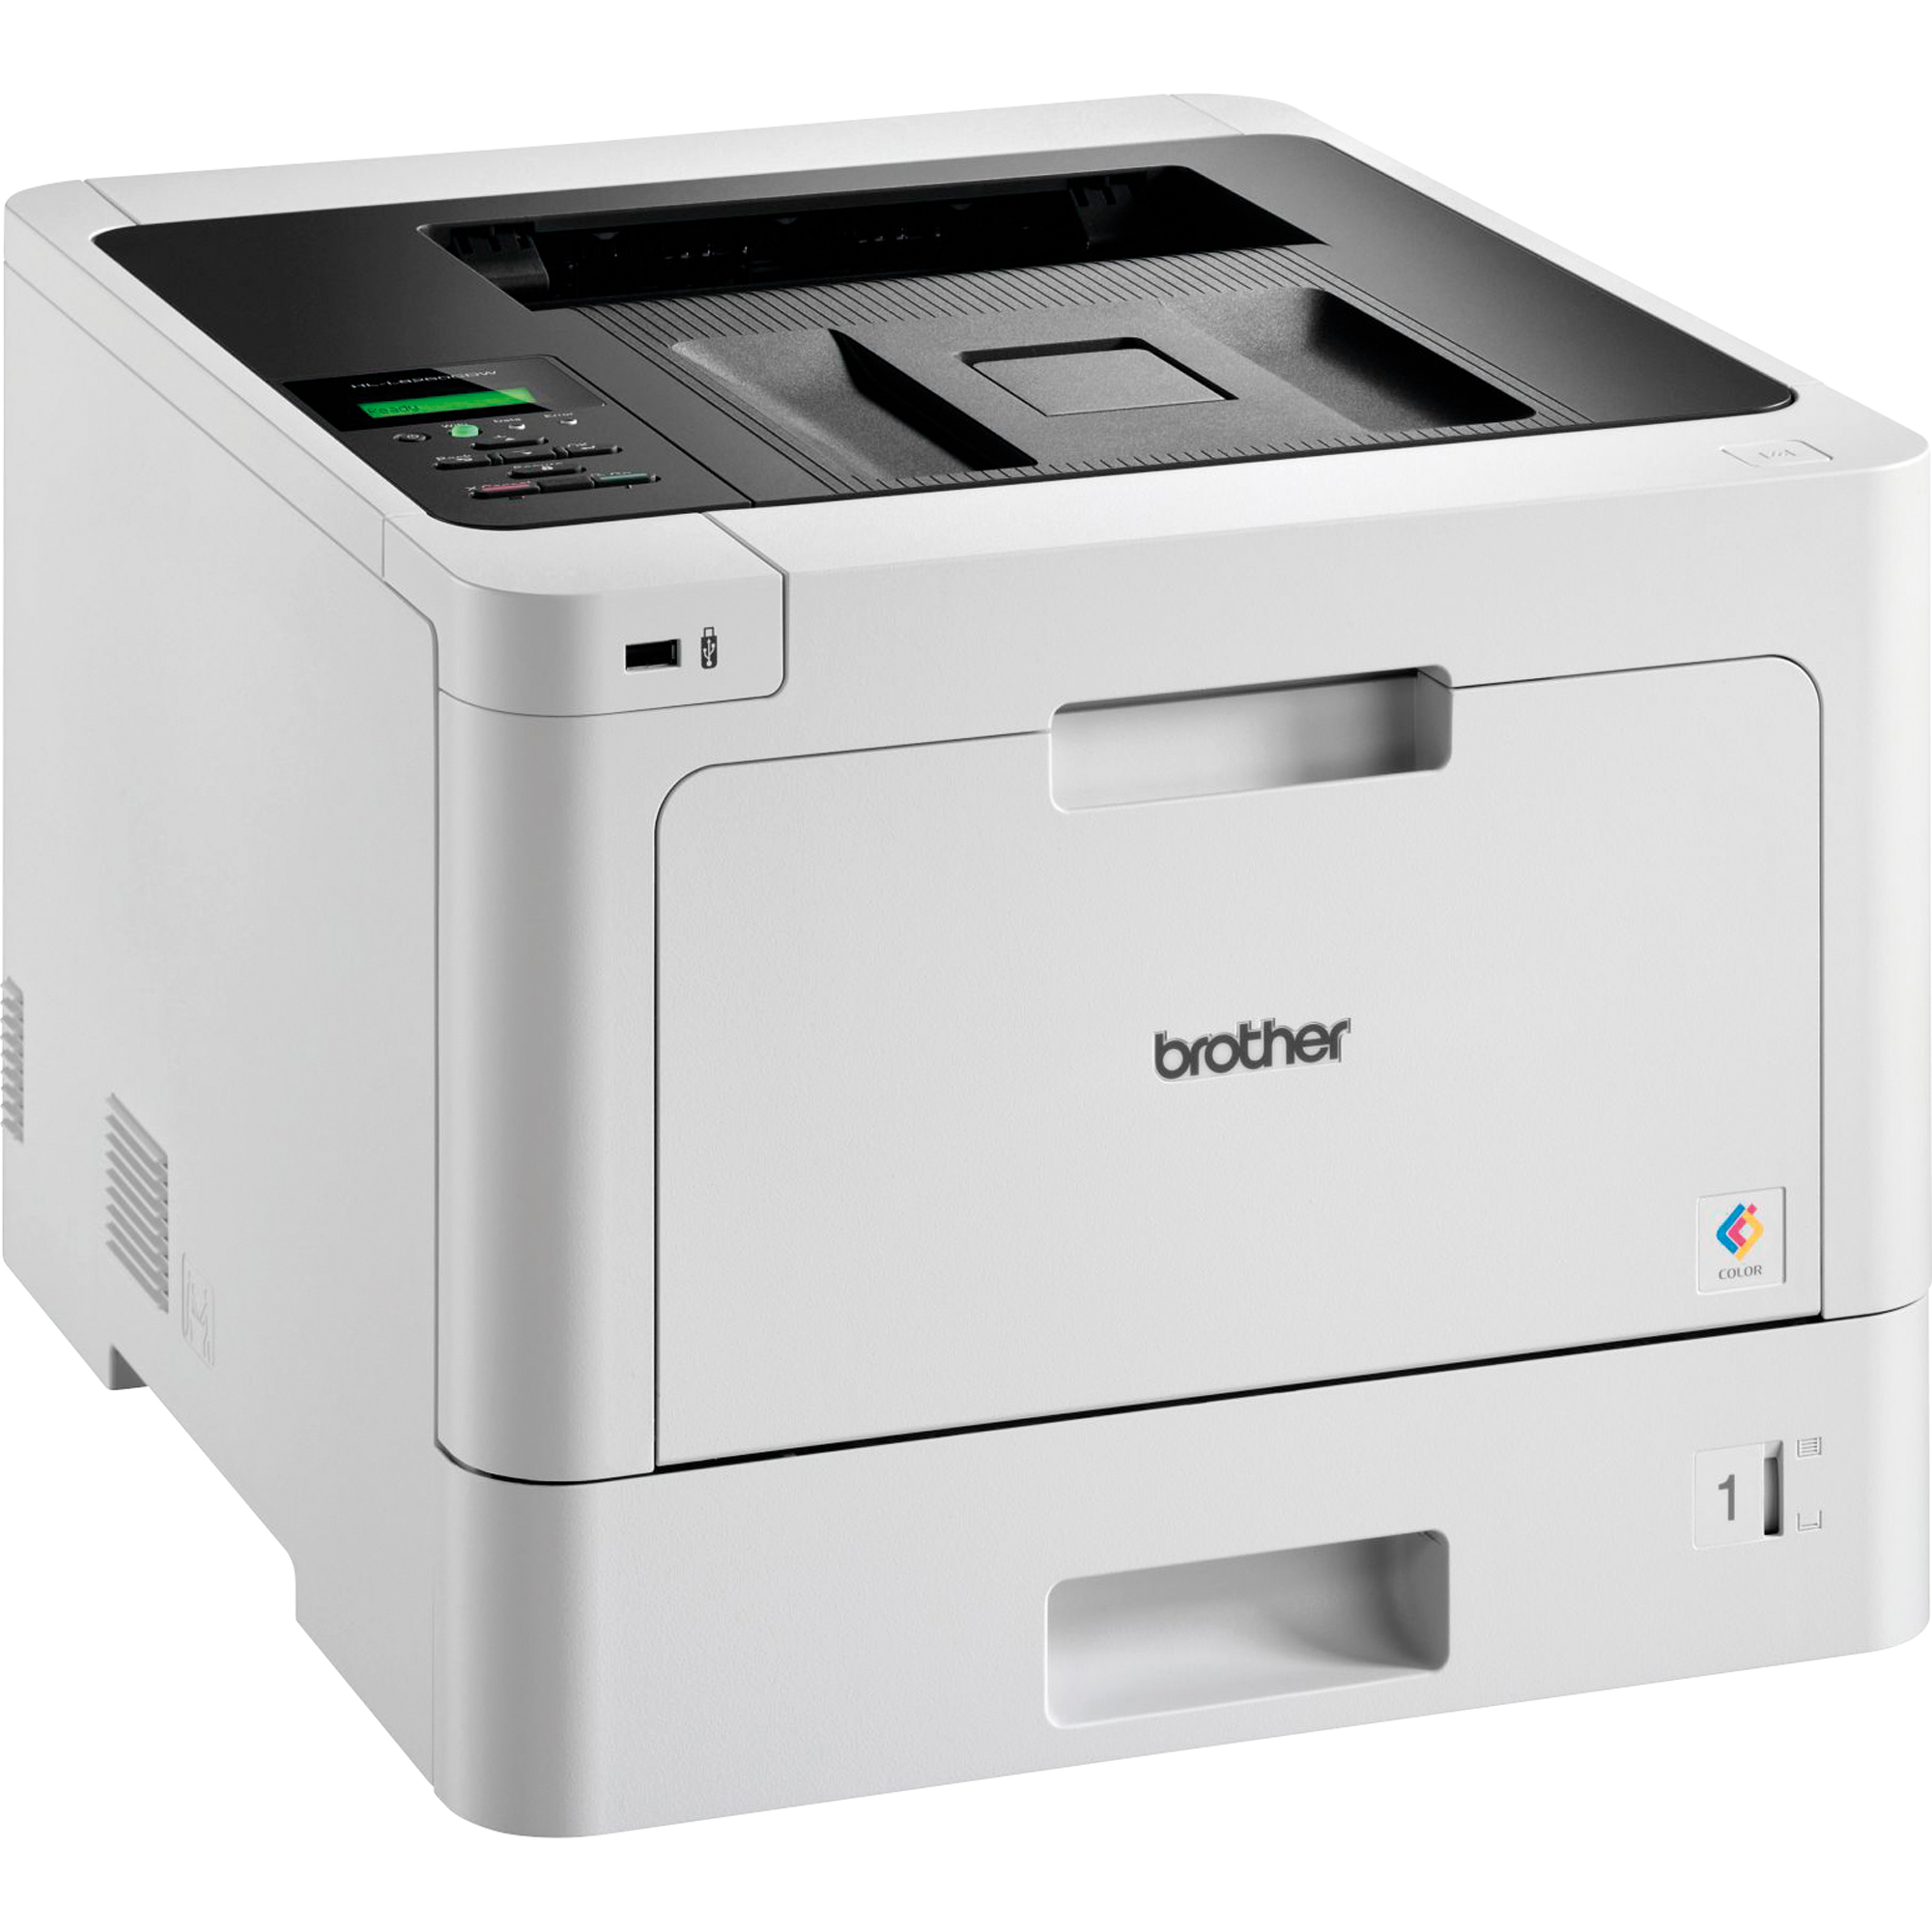 Brother Laserdrucker HL-L8260CDW mit Farbdruck